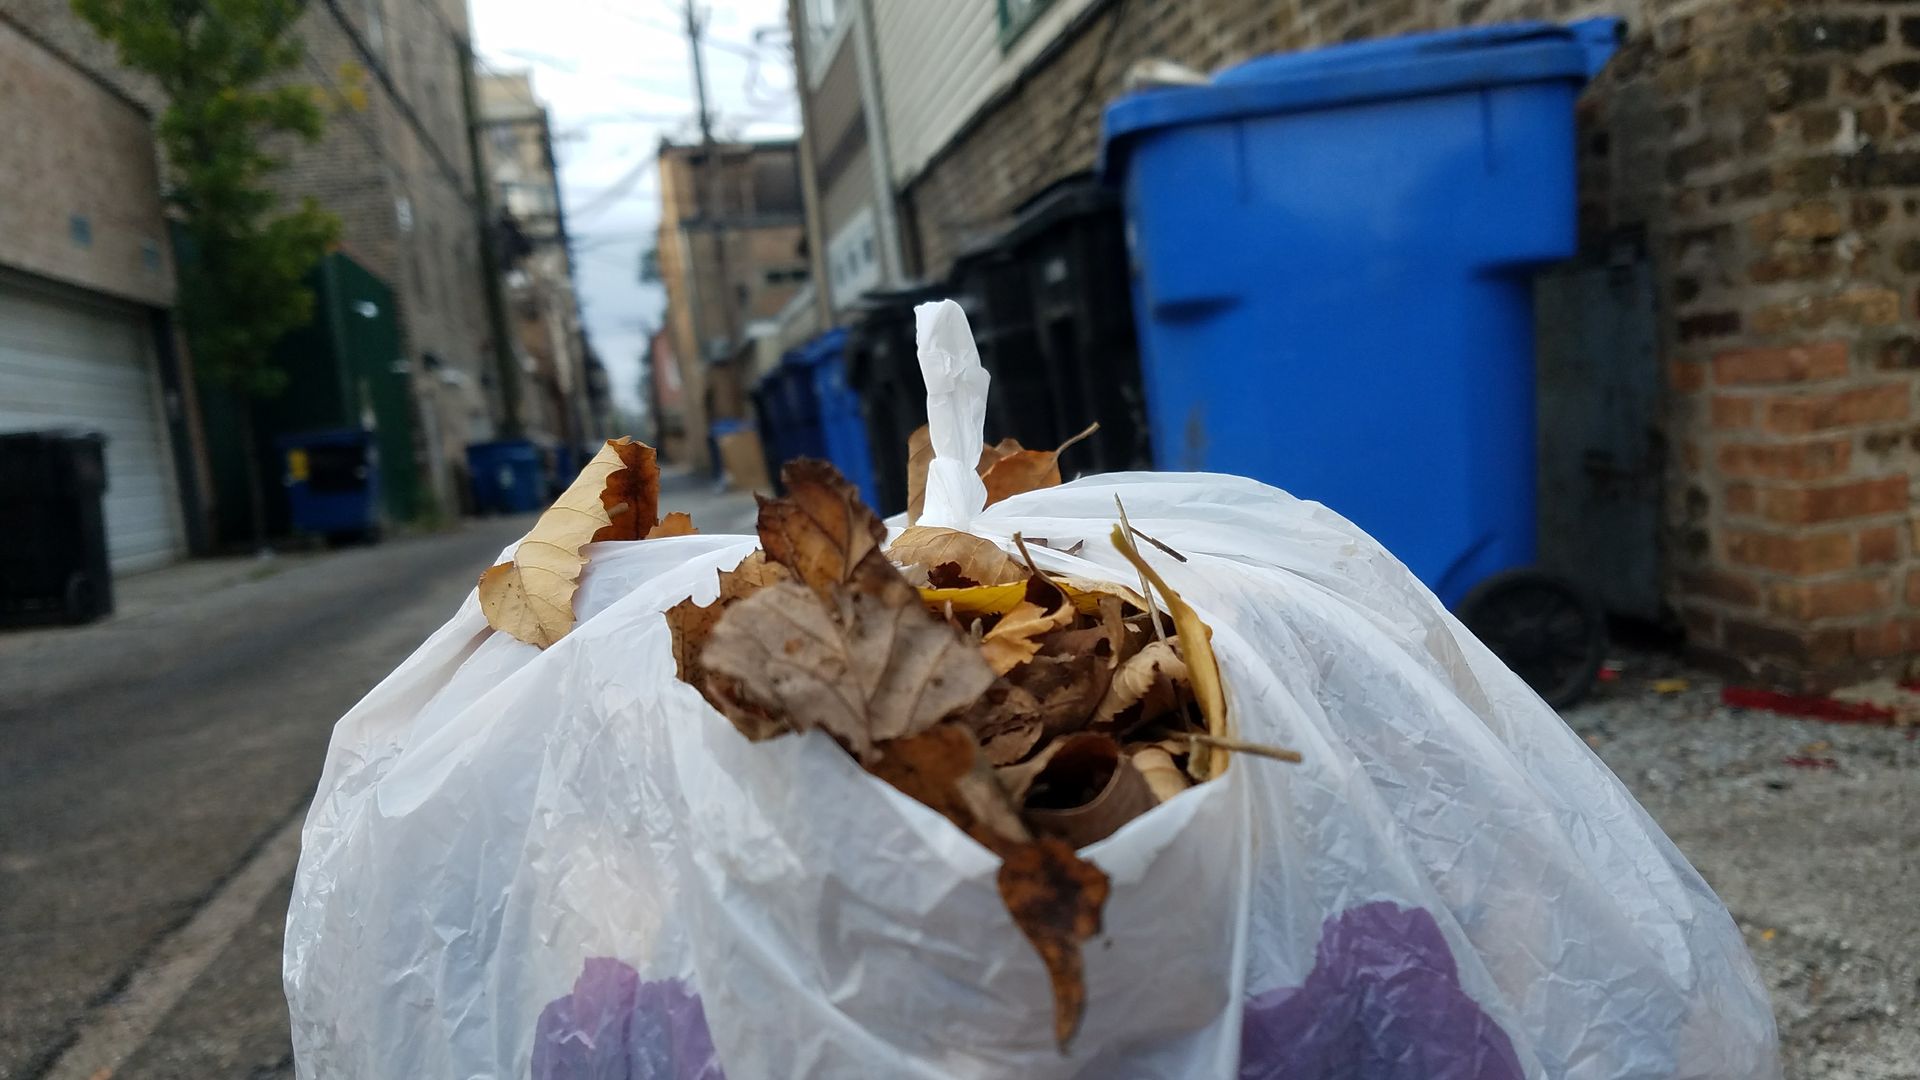 bag of leaves in alley. 